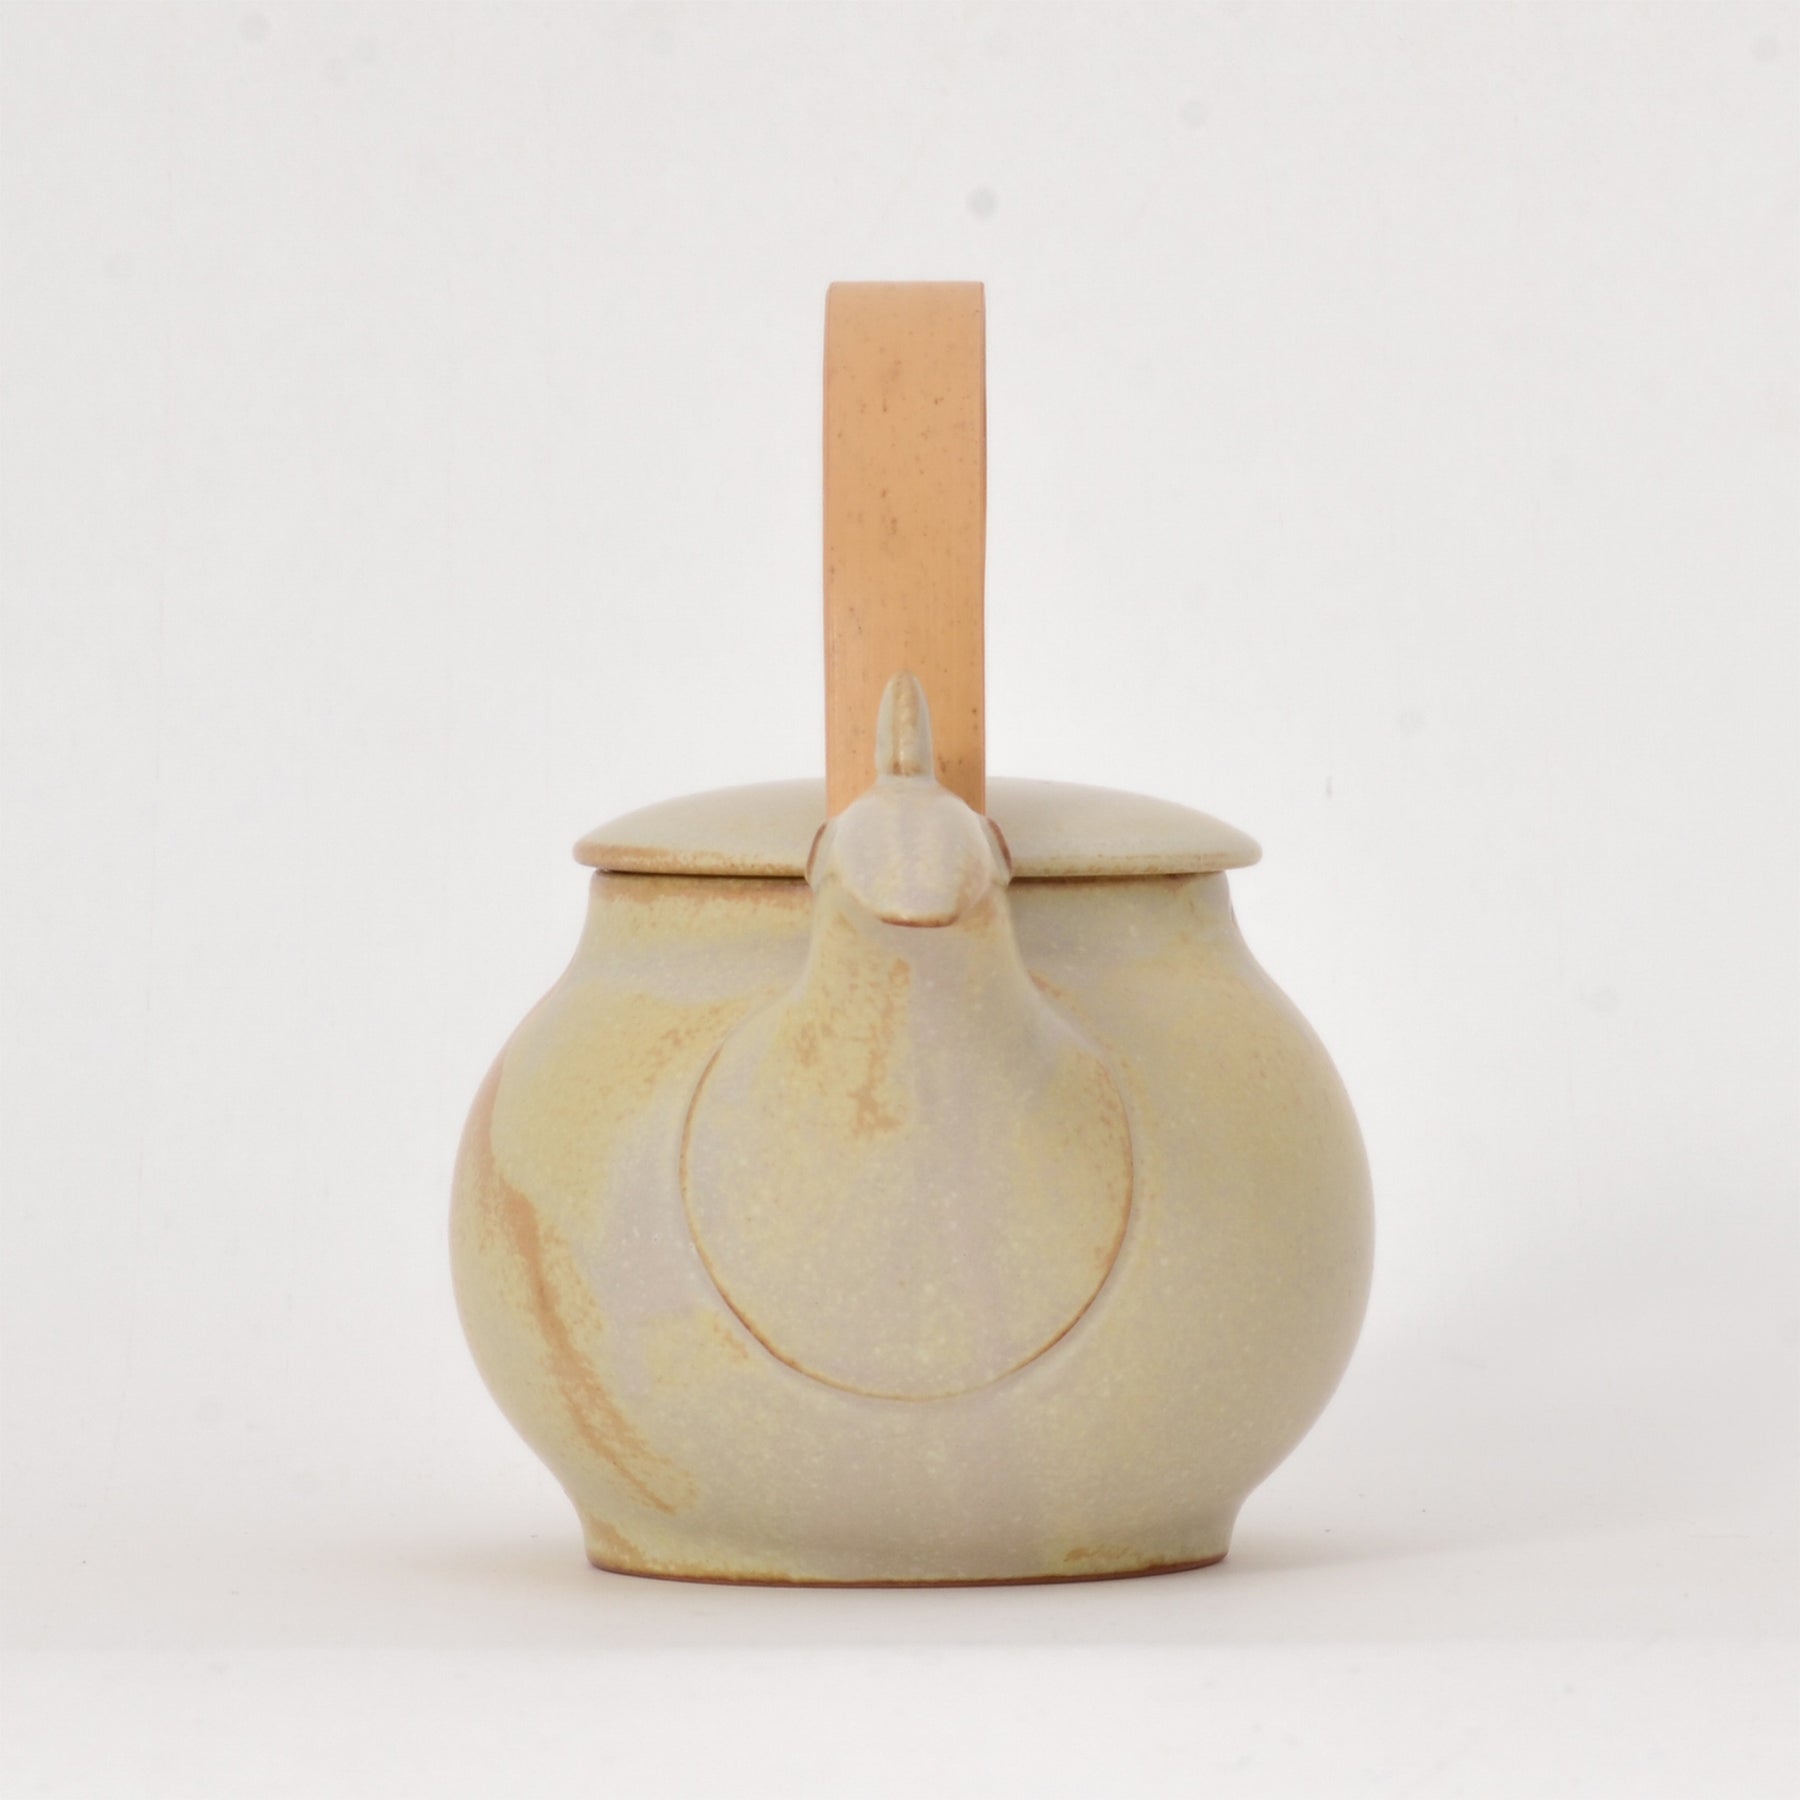 Ceramic Japan, Tori Tea pot, Teaware, Makoto Komatsu,